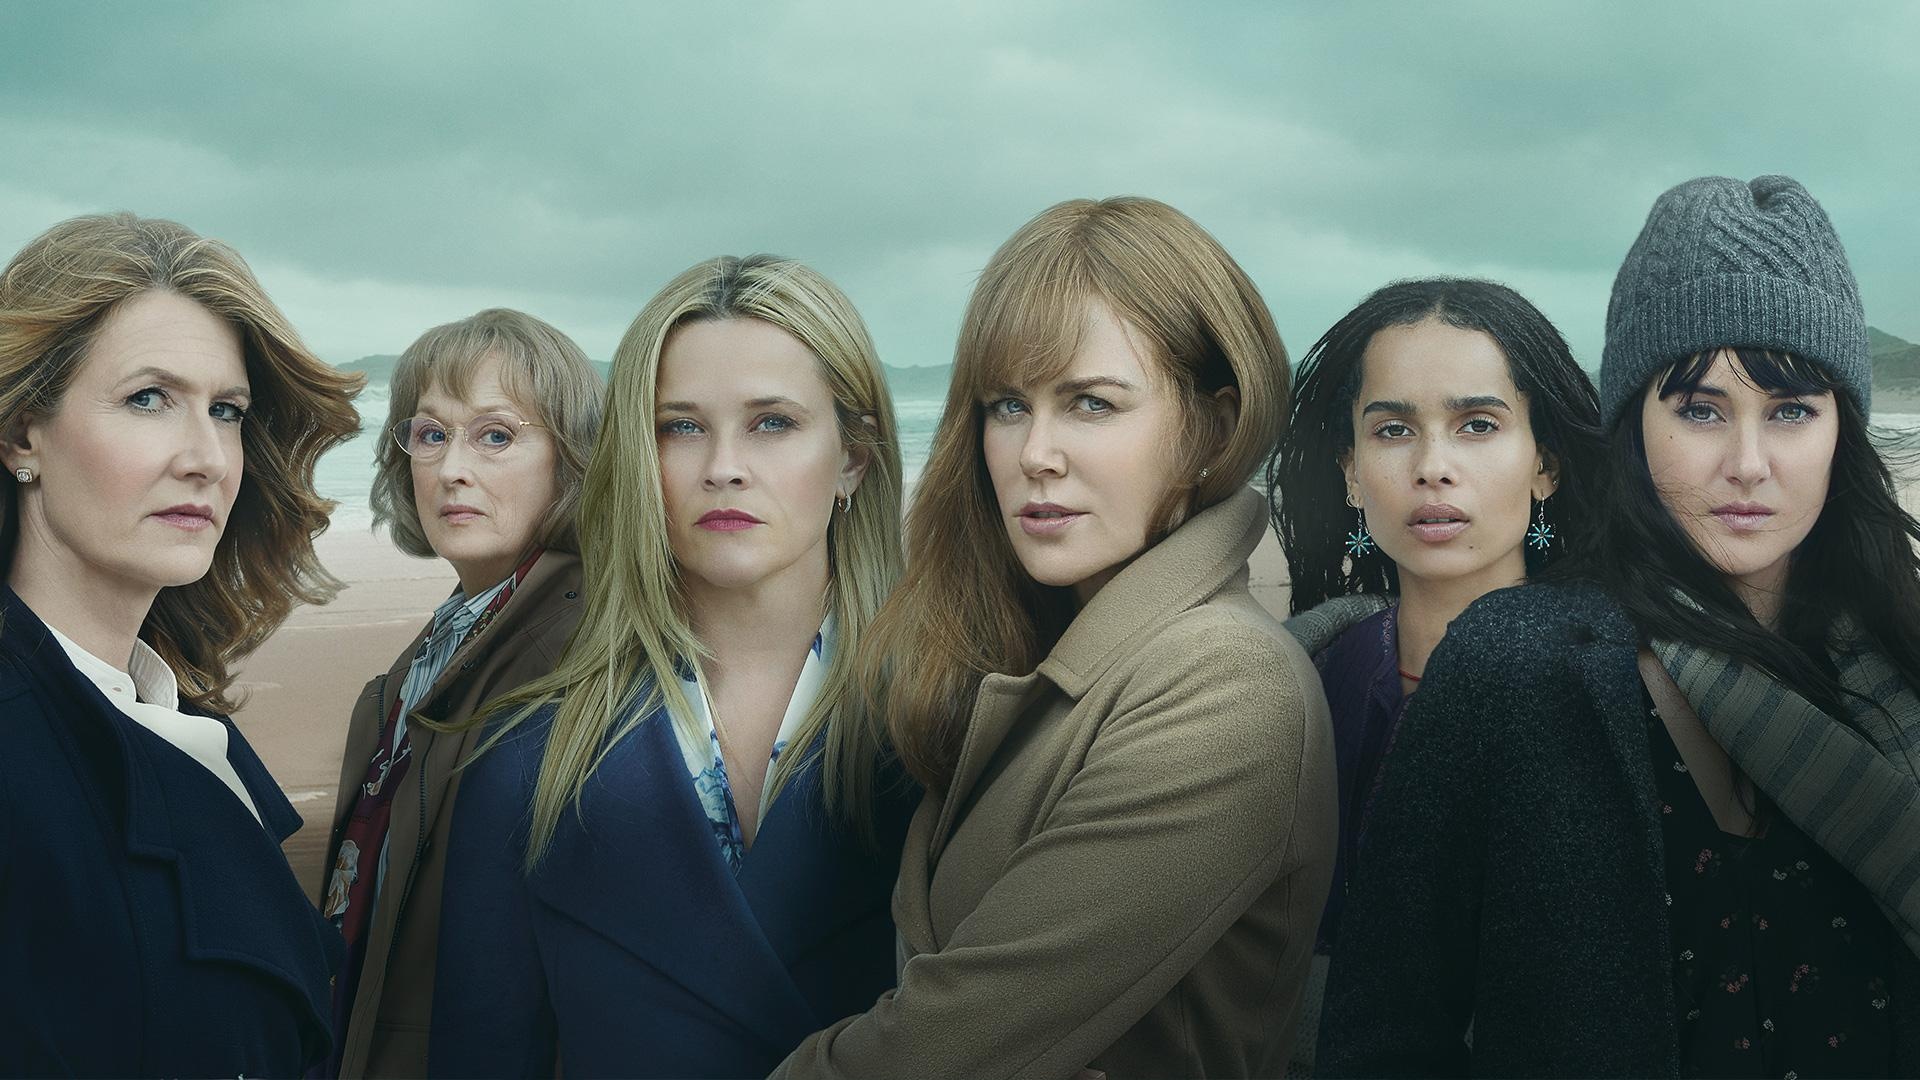 Laura Dern: Big Little Lies, Reese Witherspoon, Nicole Kidman, Shailene Woodley, Renata Klein. 1920x1080 Full HD Background.